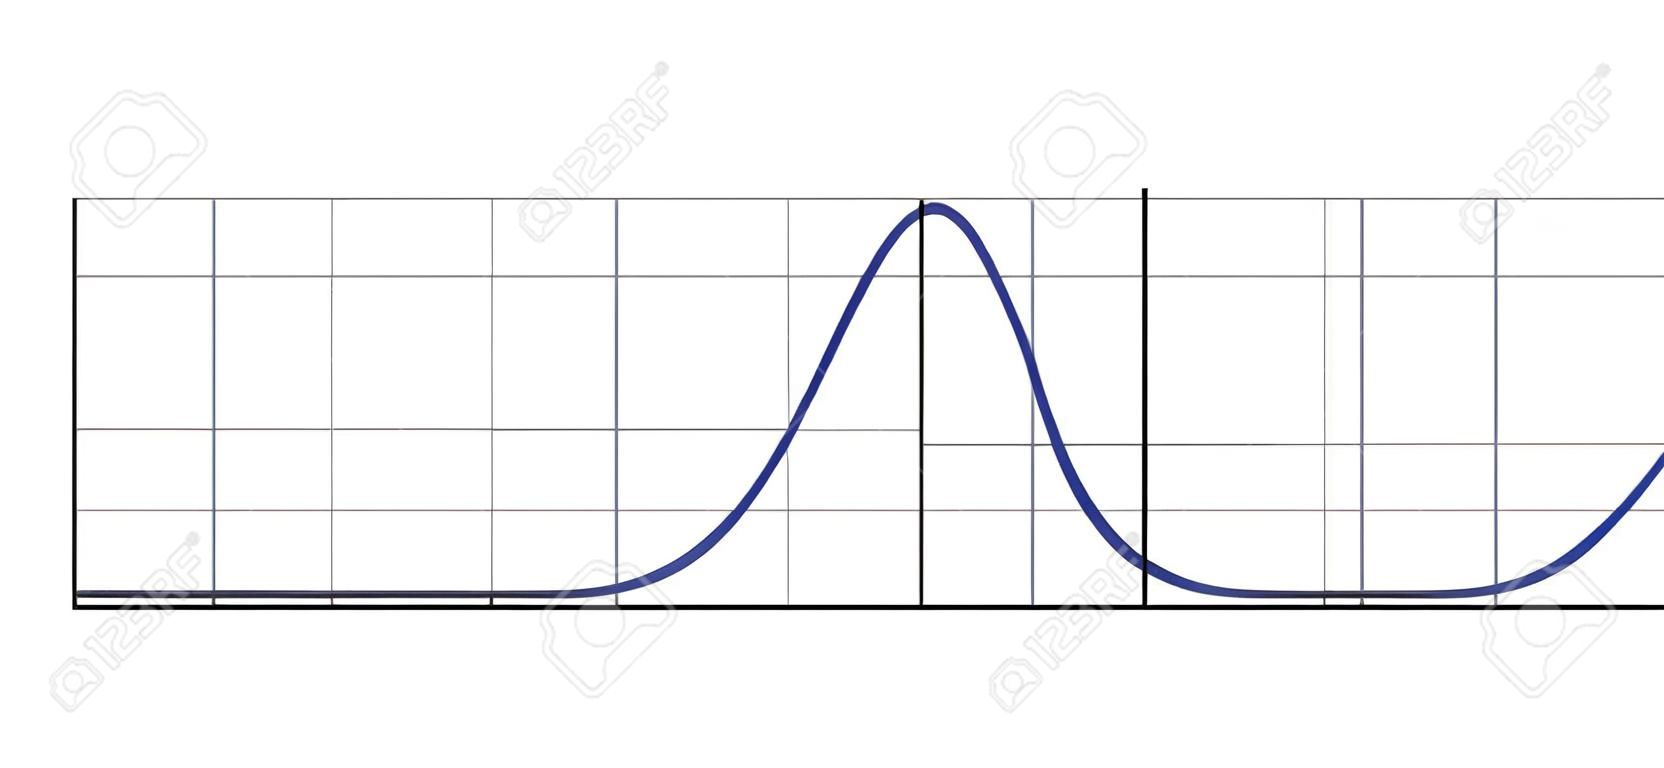 Distribuzione di Gauss. Distribuzione normale standard. Curva del grafico a campana gaussiana. Concetto di affari e marketing. Teoria della probabilità matematica. Tratto modificabile. Illustrazione vettoriale isolata su sfondo bianco.